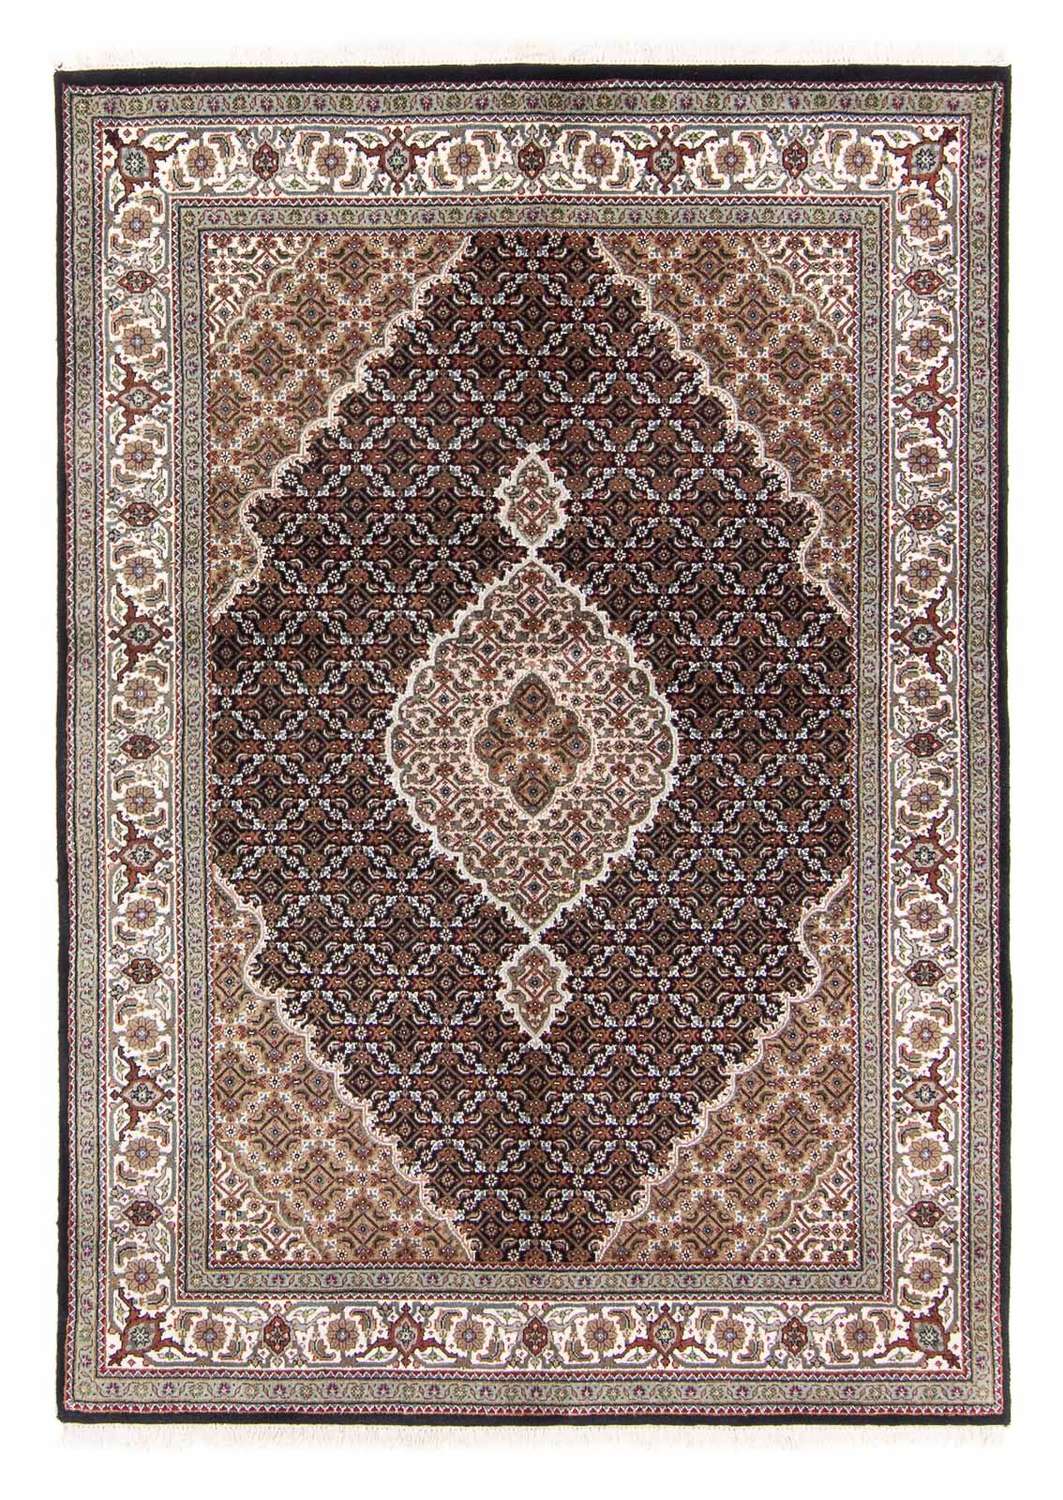 Dywan perski - Tabriz - 202 x 138 cm - ciemnoniebieski